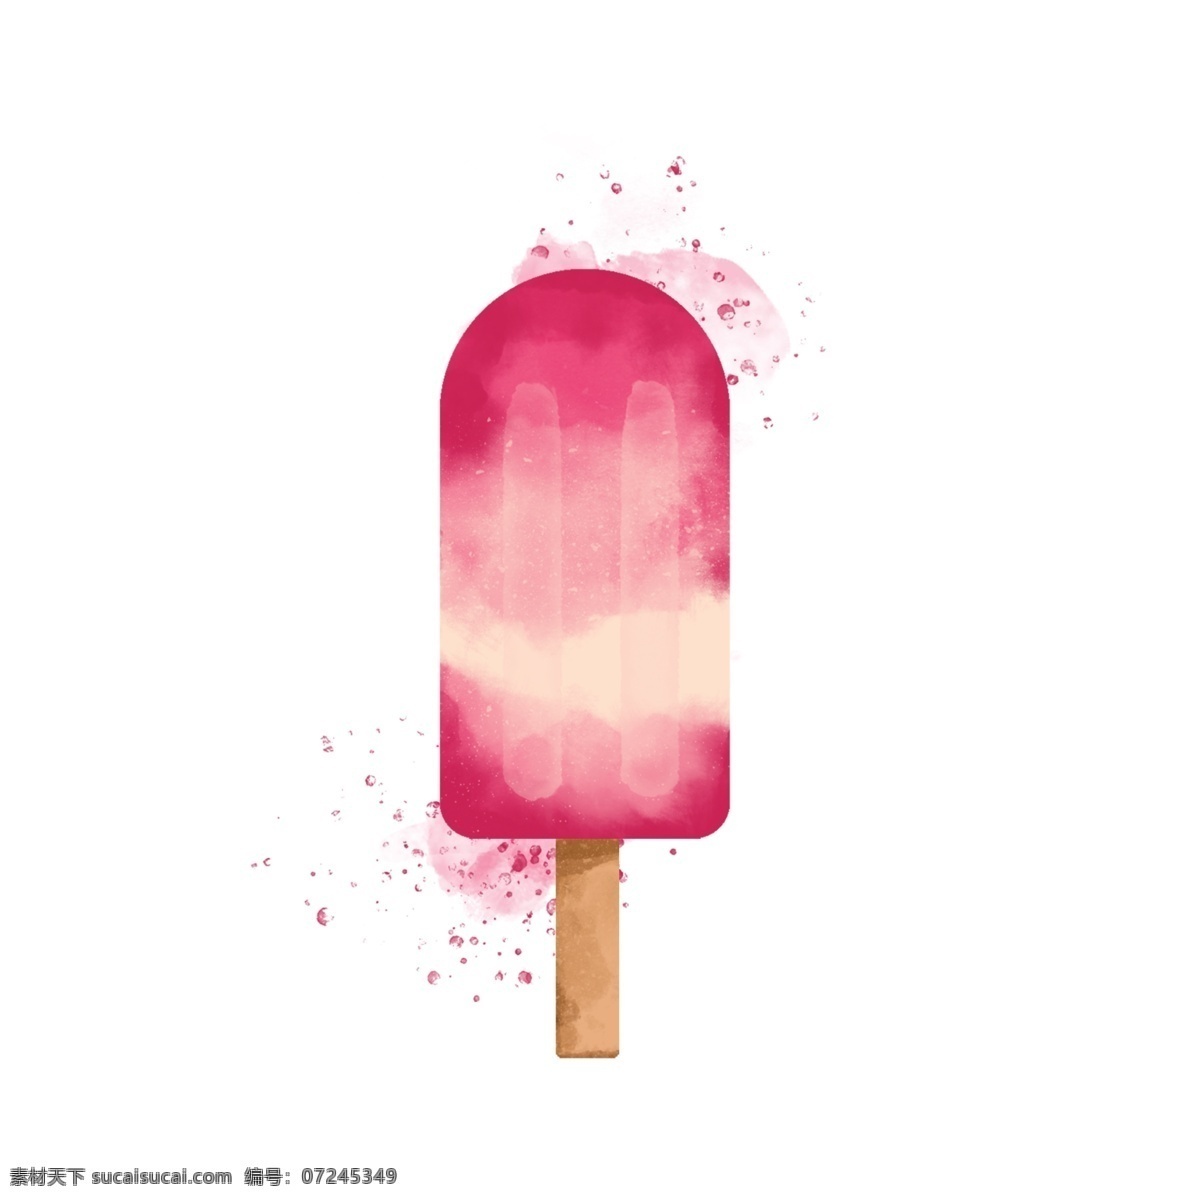 夏日 冰 爽 水蜜桃 味 冰棍 水彩冰淇淋 粉色 甜蜜 味道 甜甜水蜜桃味 夏日冰棍 奶油冰淇淋 小清新冰棍